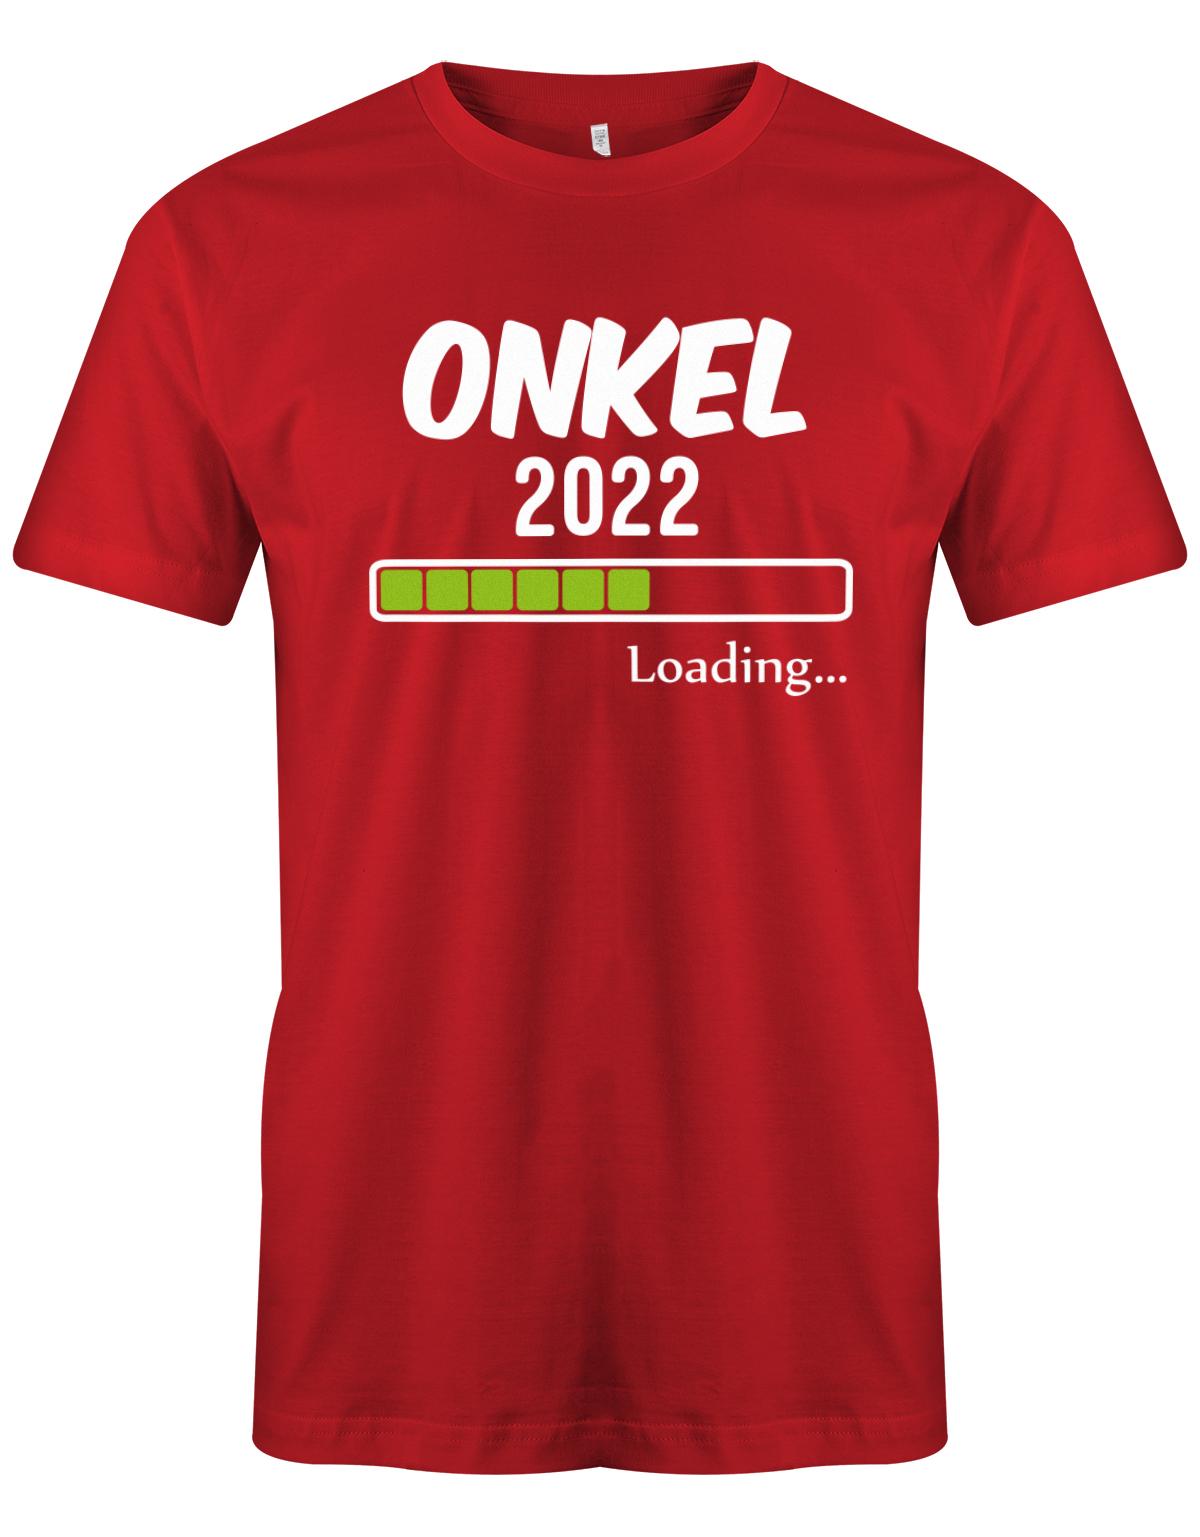 Onkel-loading-2022-Herren-Shirt-Rot